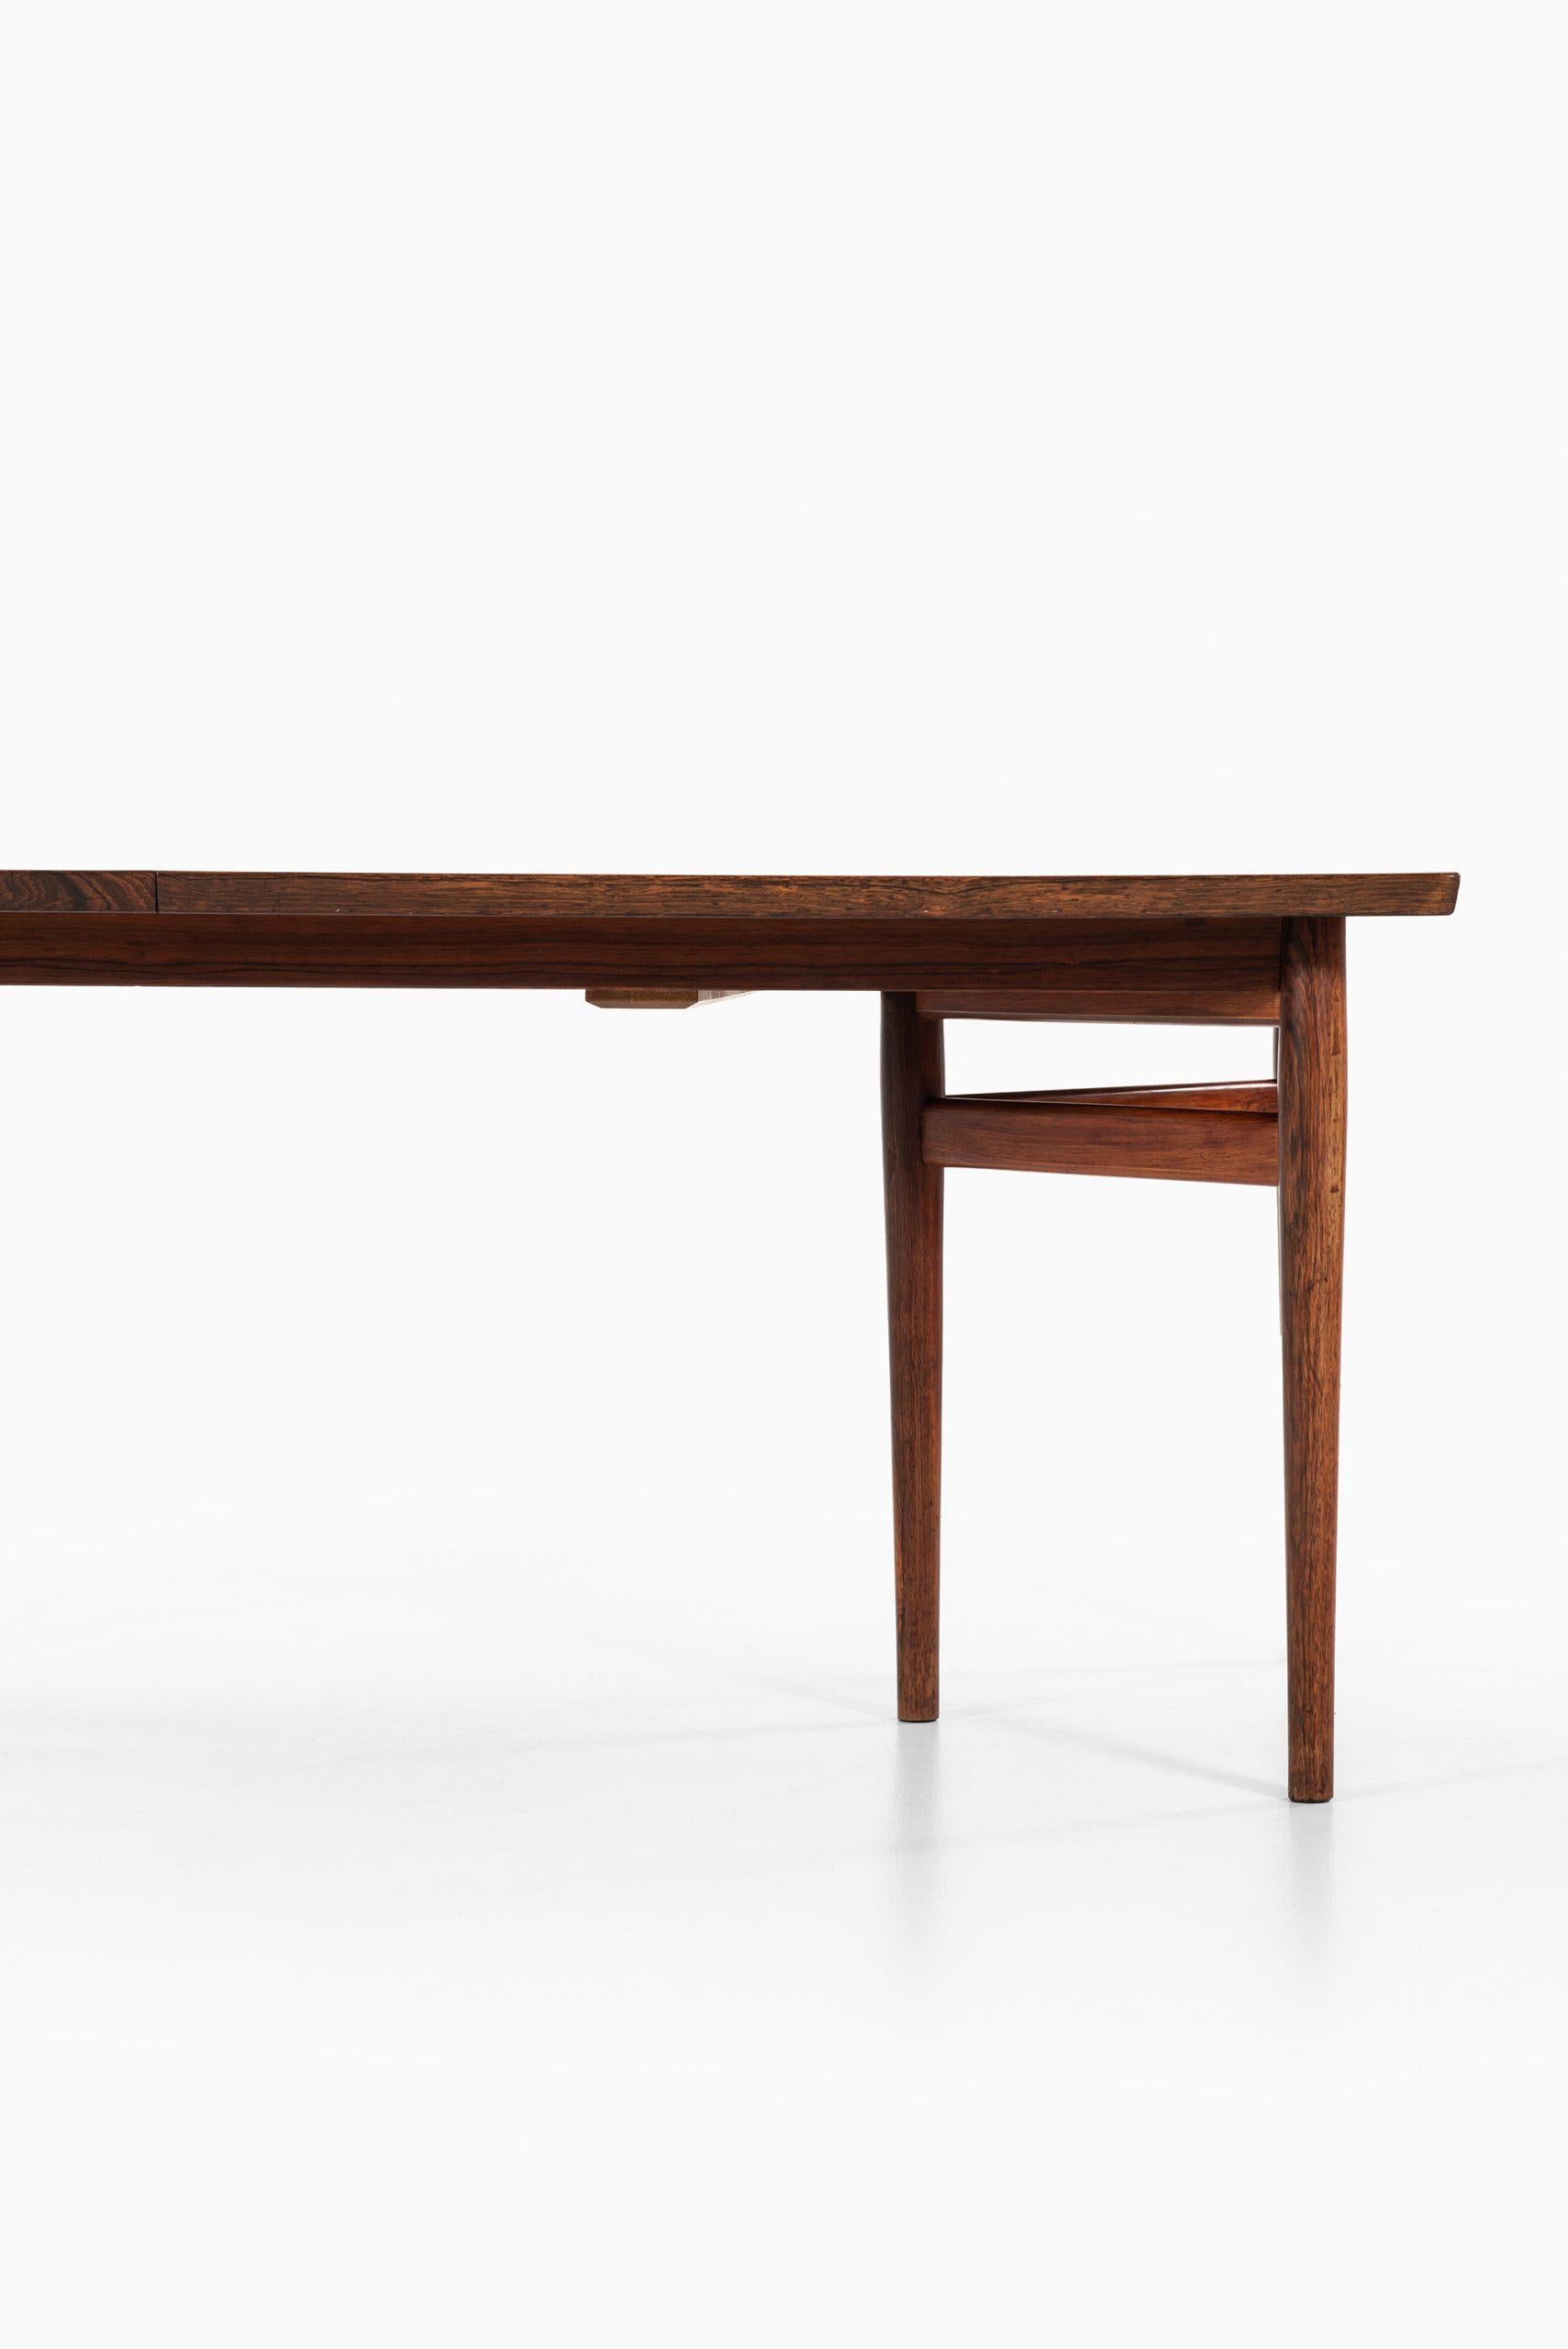 Rare table à manger modèle 201 conçue par Arne Vodder. Produit par Sibast Møbelfabrik au Danemark. Mesure : Largeur 200 ( 300 ) cm.